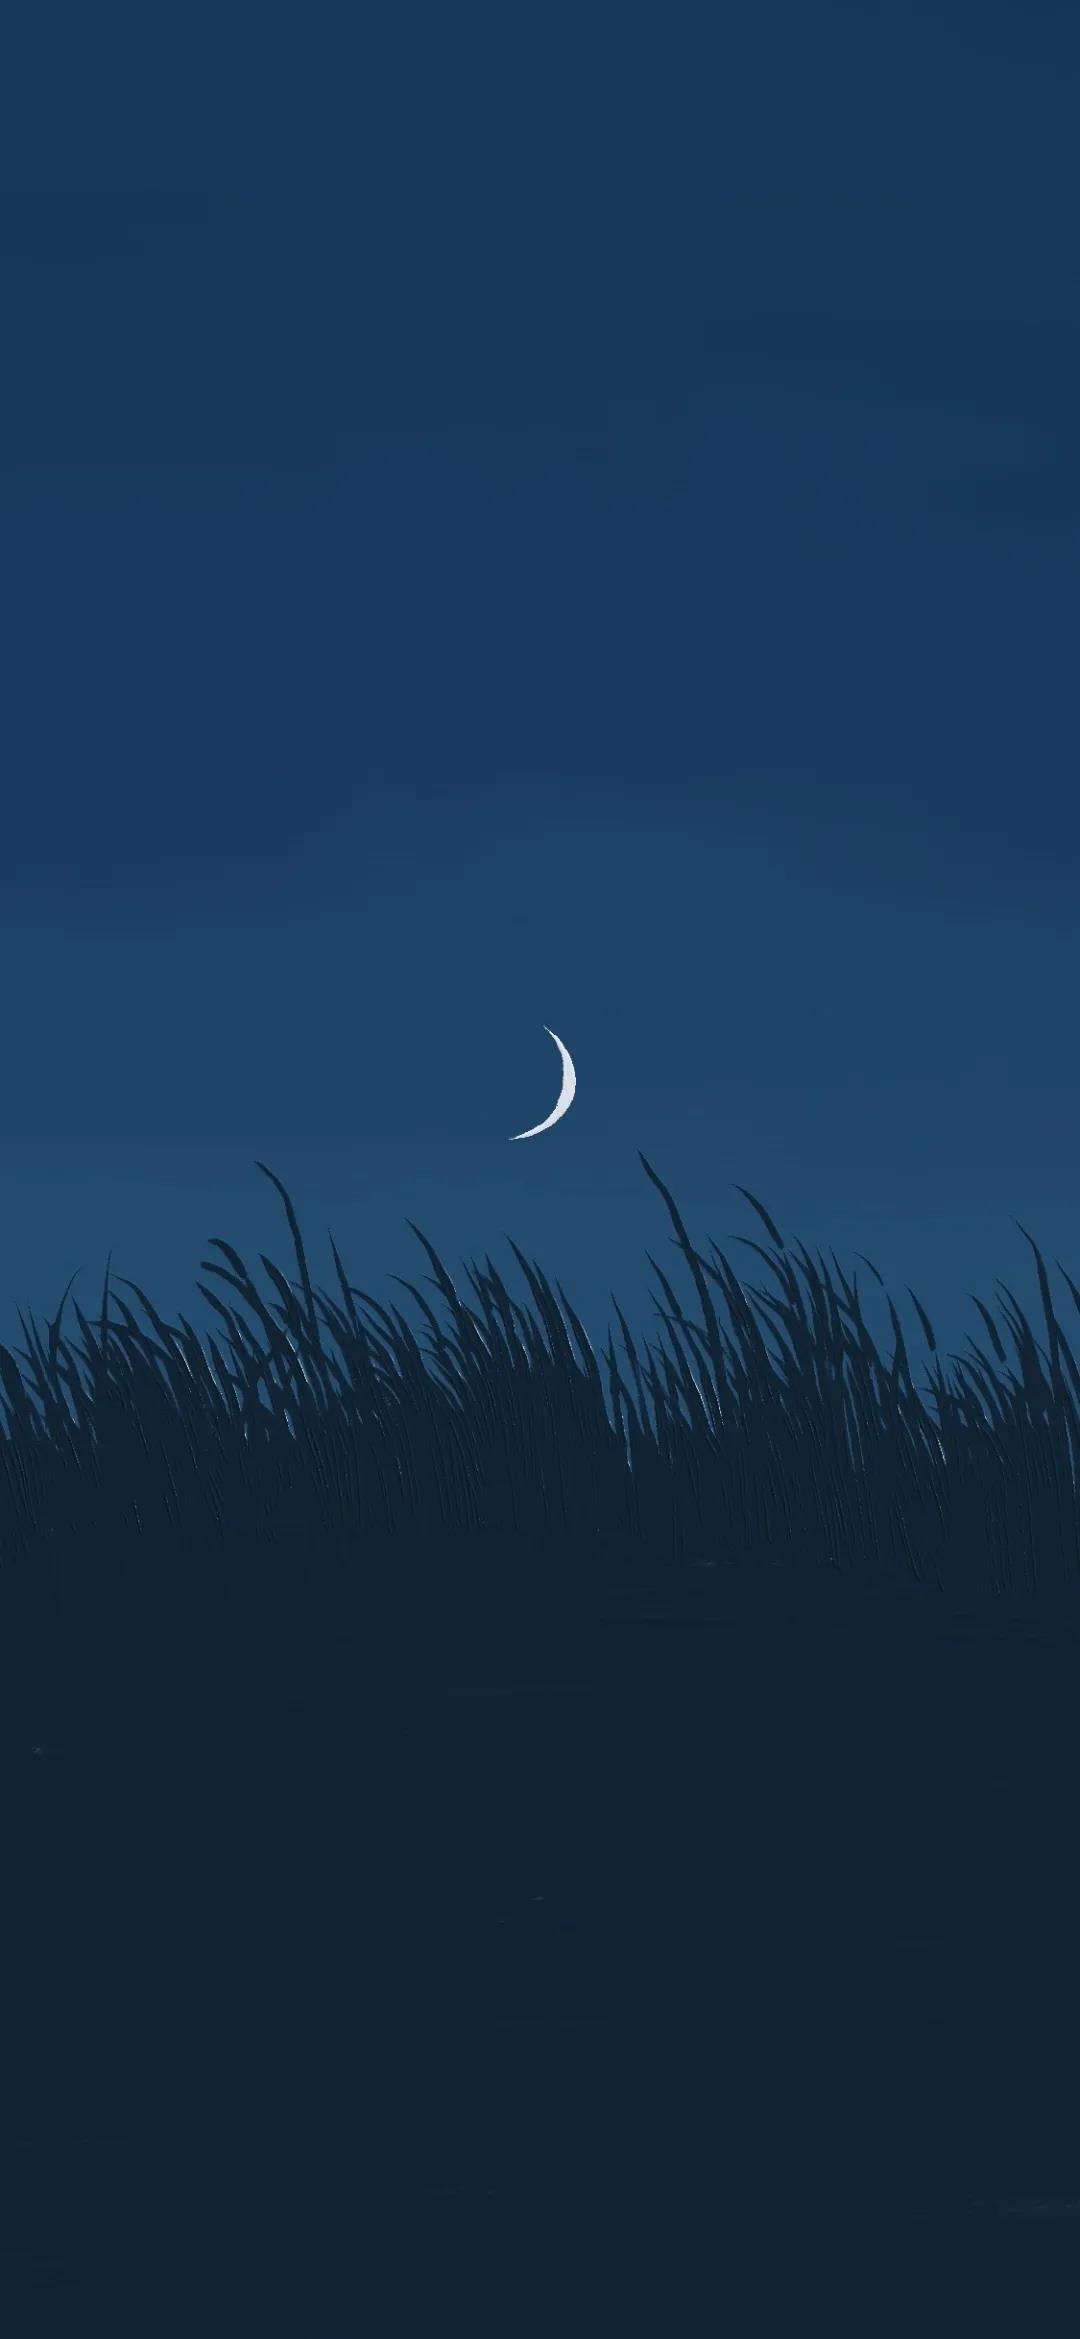 夜空中一轮弯弯的月亮唯美风景手机壁纸图片